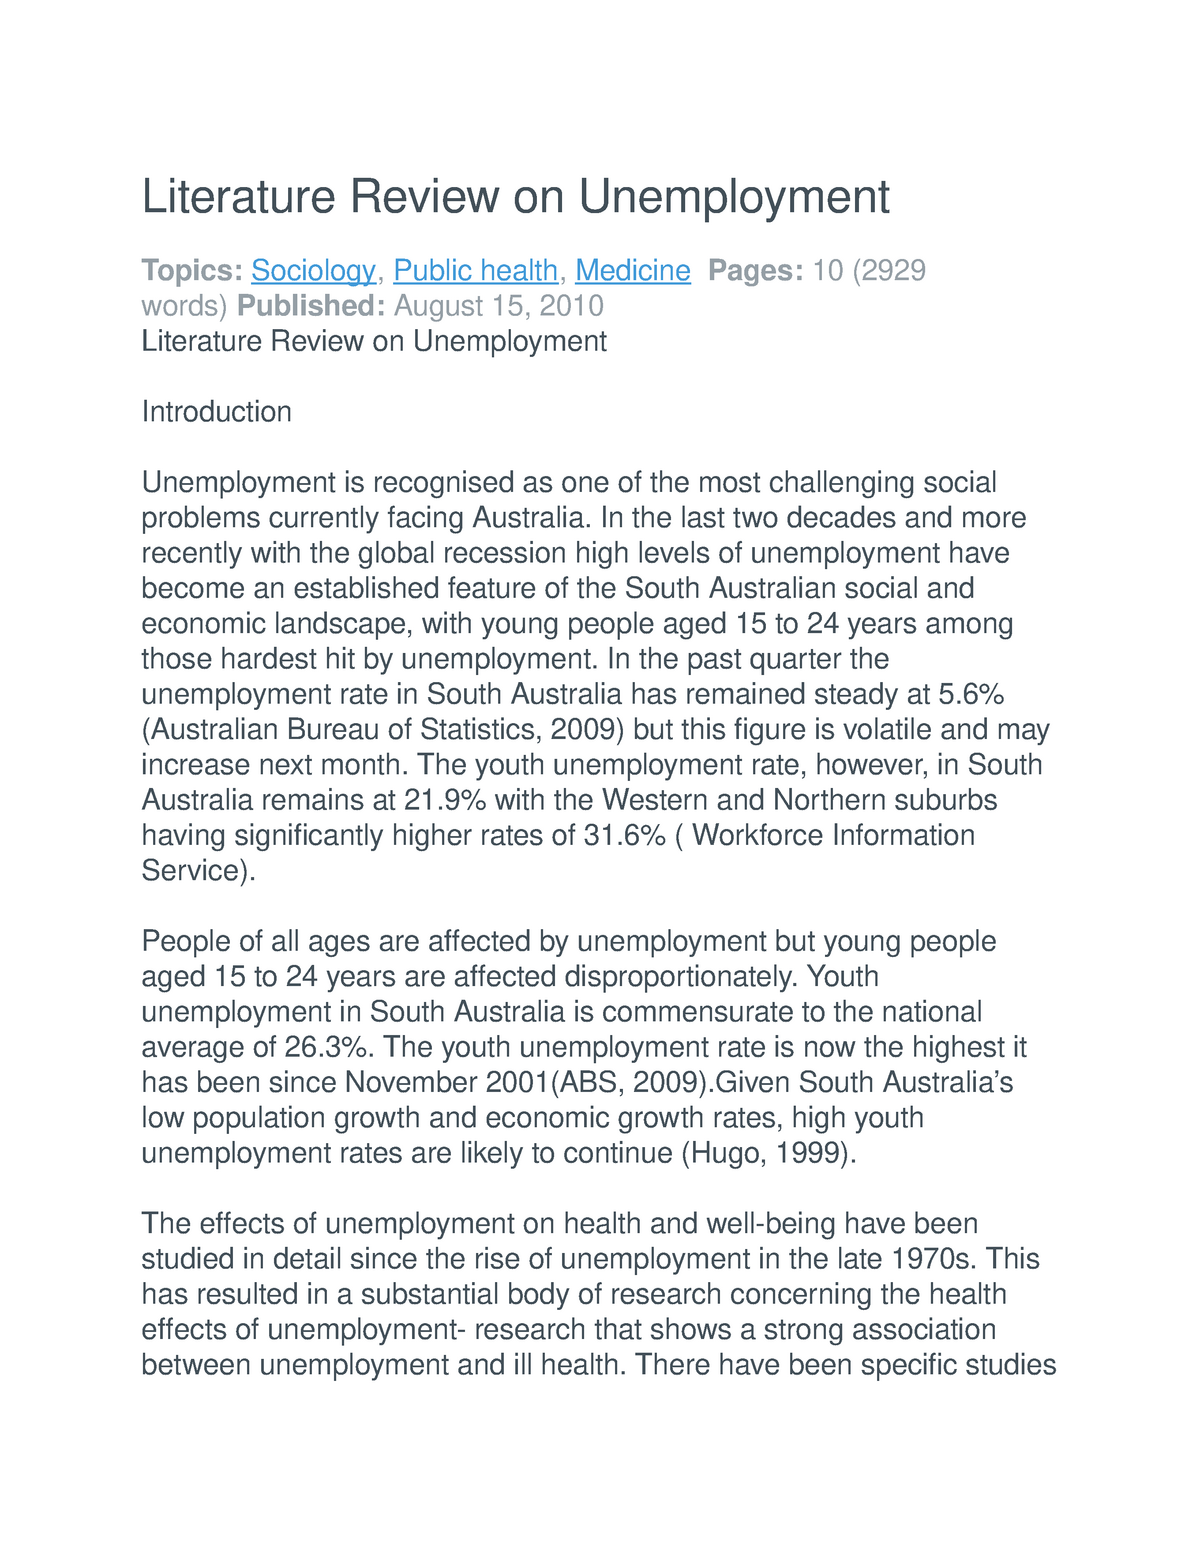 unemployment literature review pdf